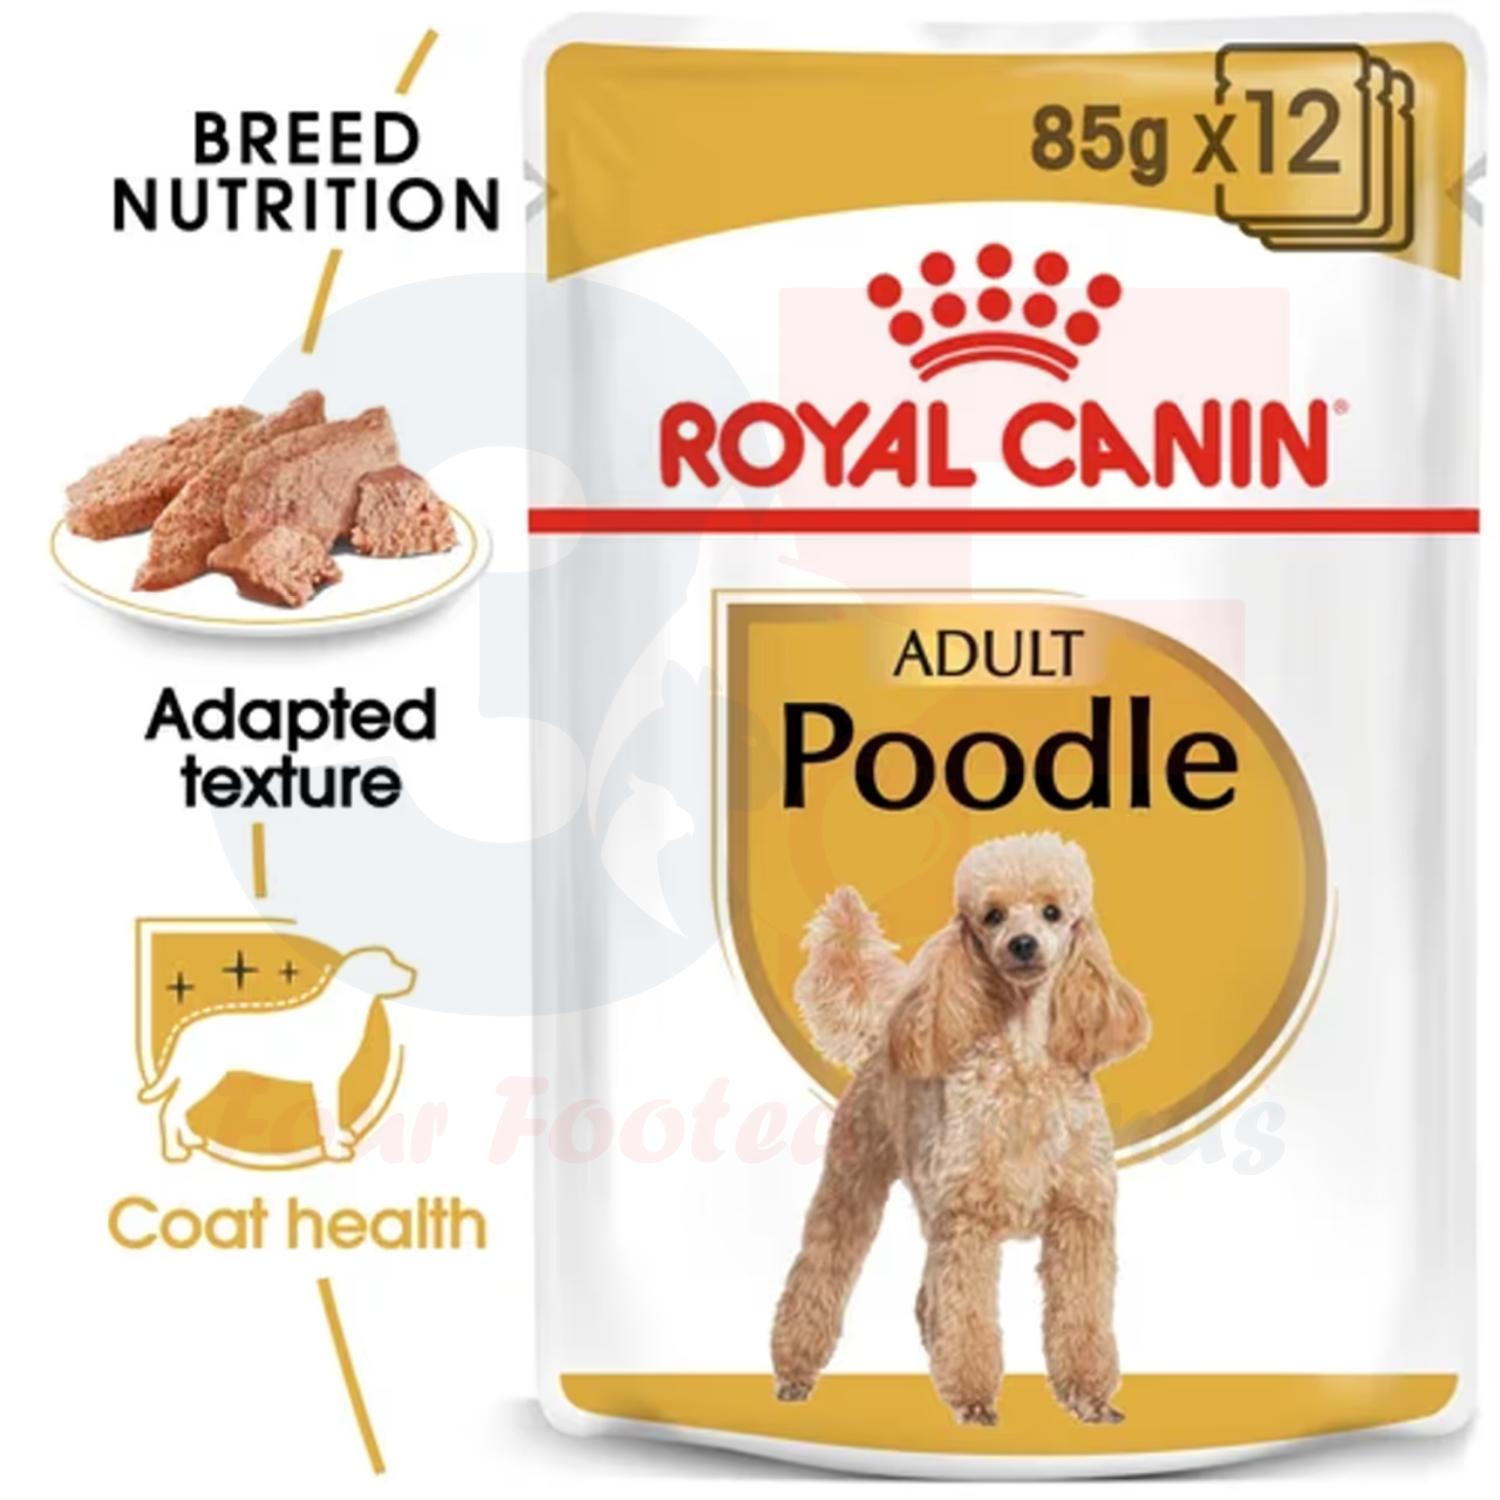 Pate Thức Ăn Ướt Xay Nhuyễn Dành Cho Chó Poodle Trưởng Thành Royal Canin Poodle Wet